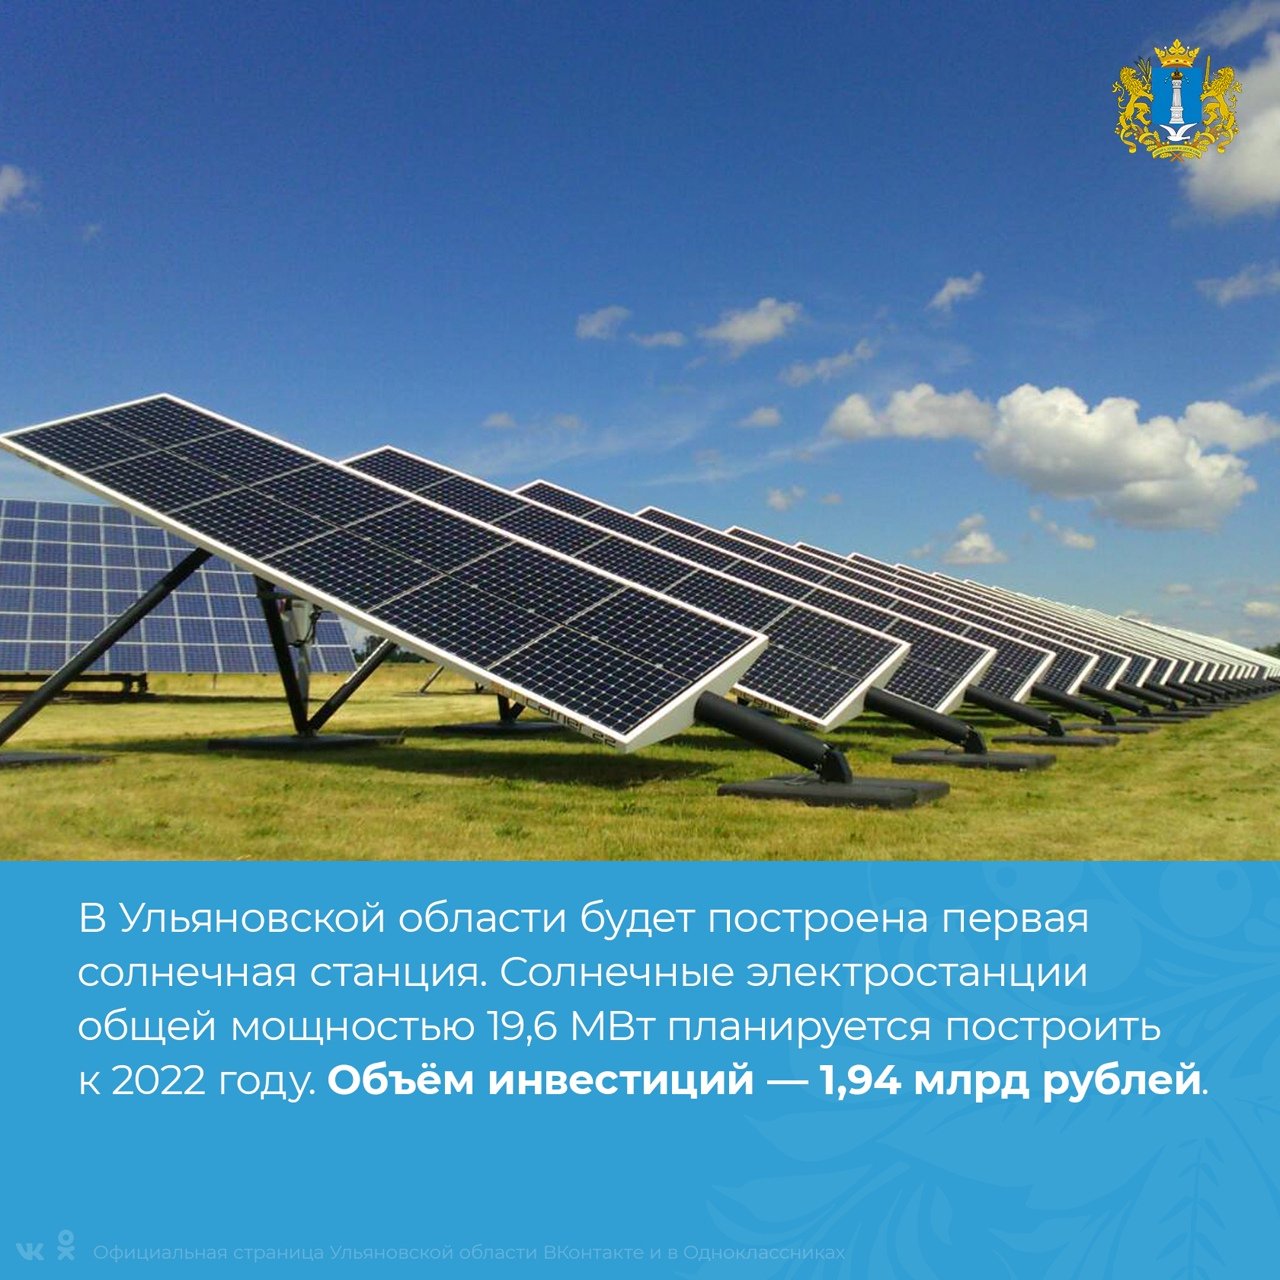 Выработка 2022. Майминская Солнечная электростанция. Солнечная станция в Ульяновской области. Солнечная электростанция Янгискаин. Солнечная электростанция от «Хевел».